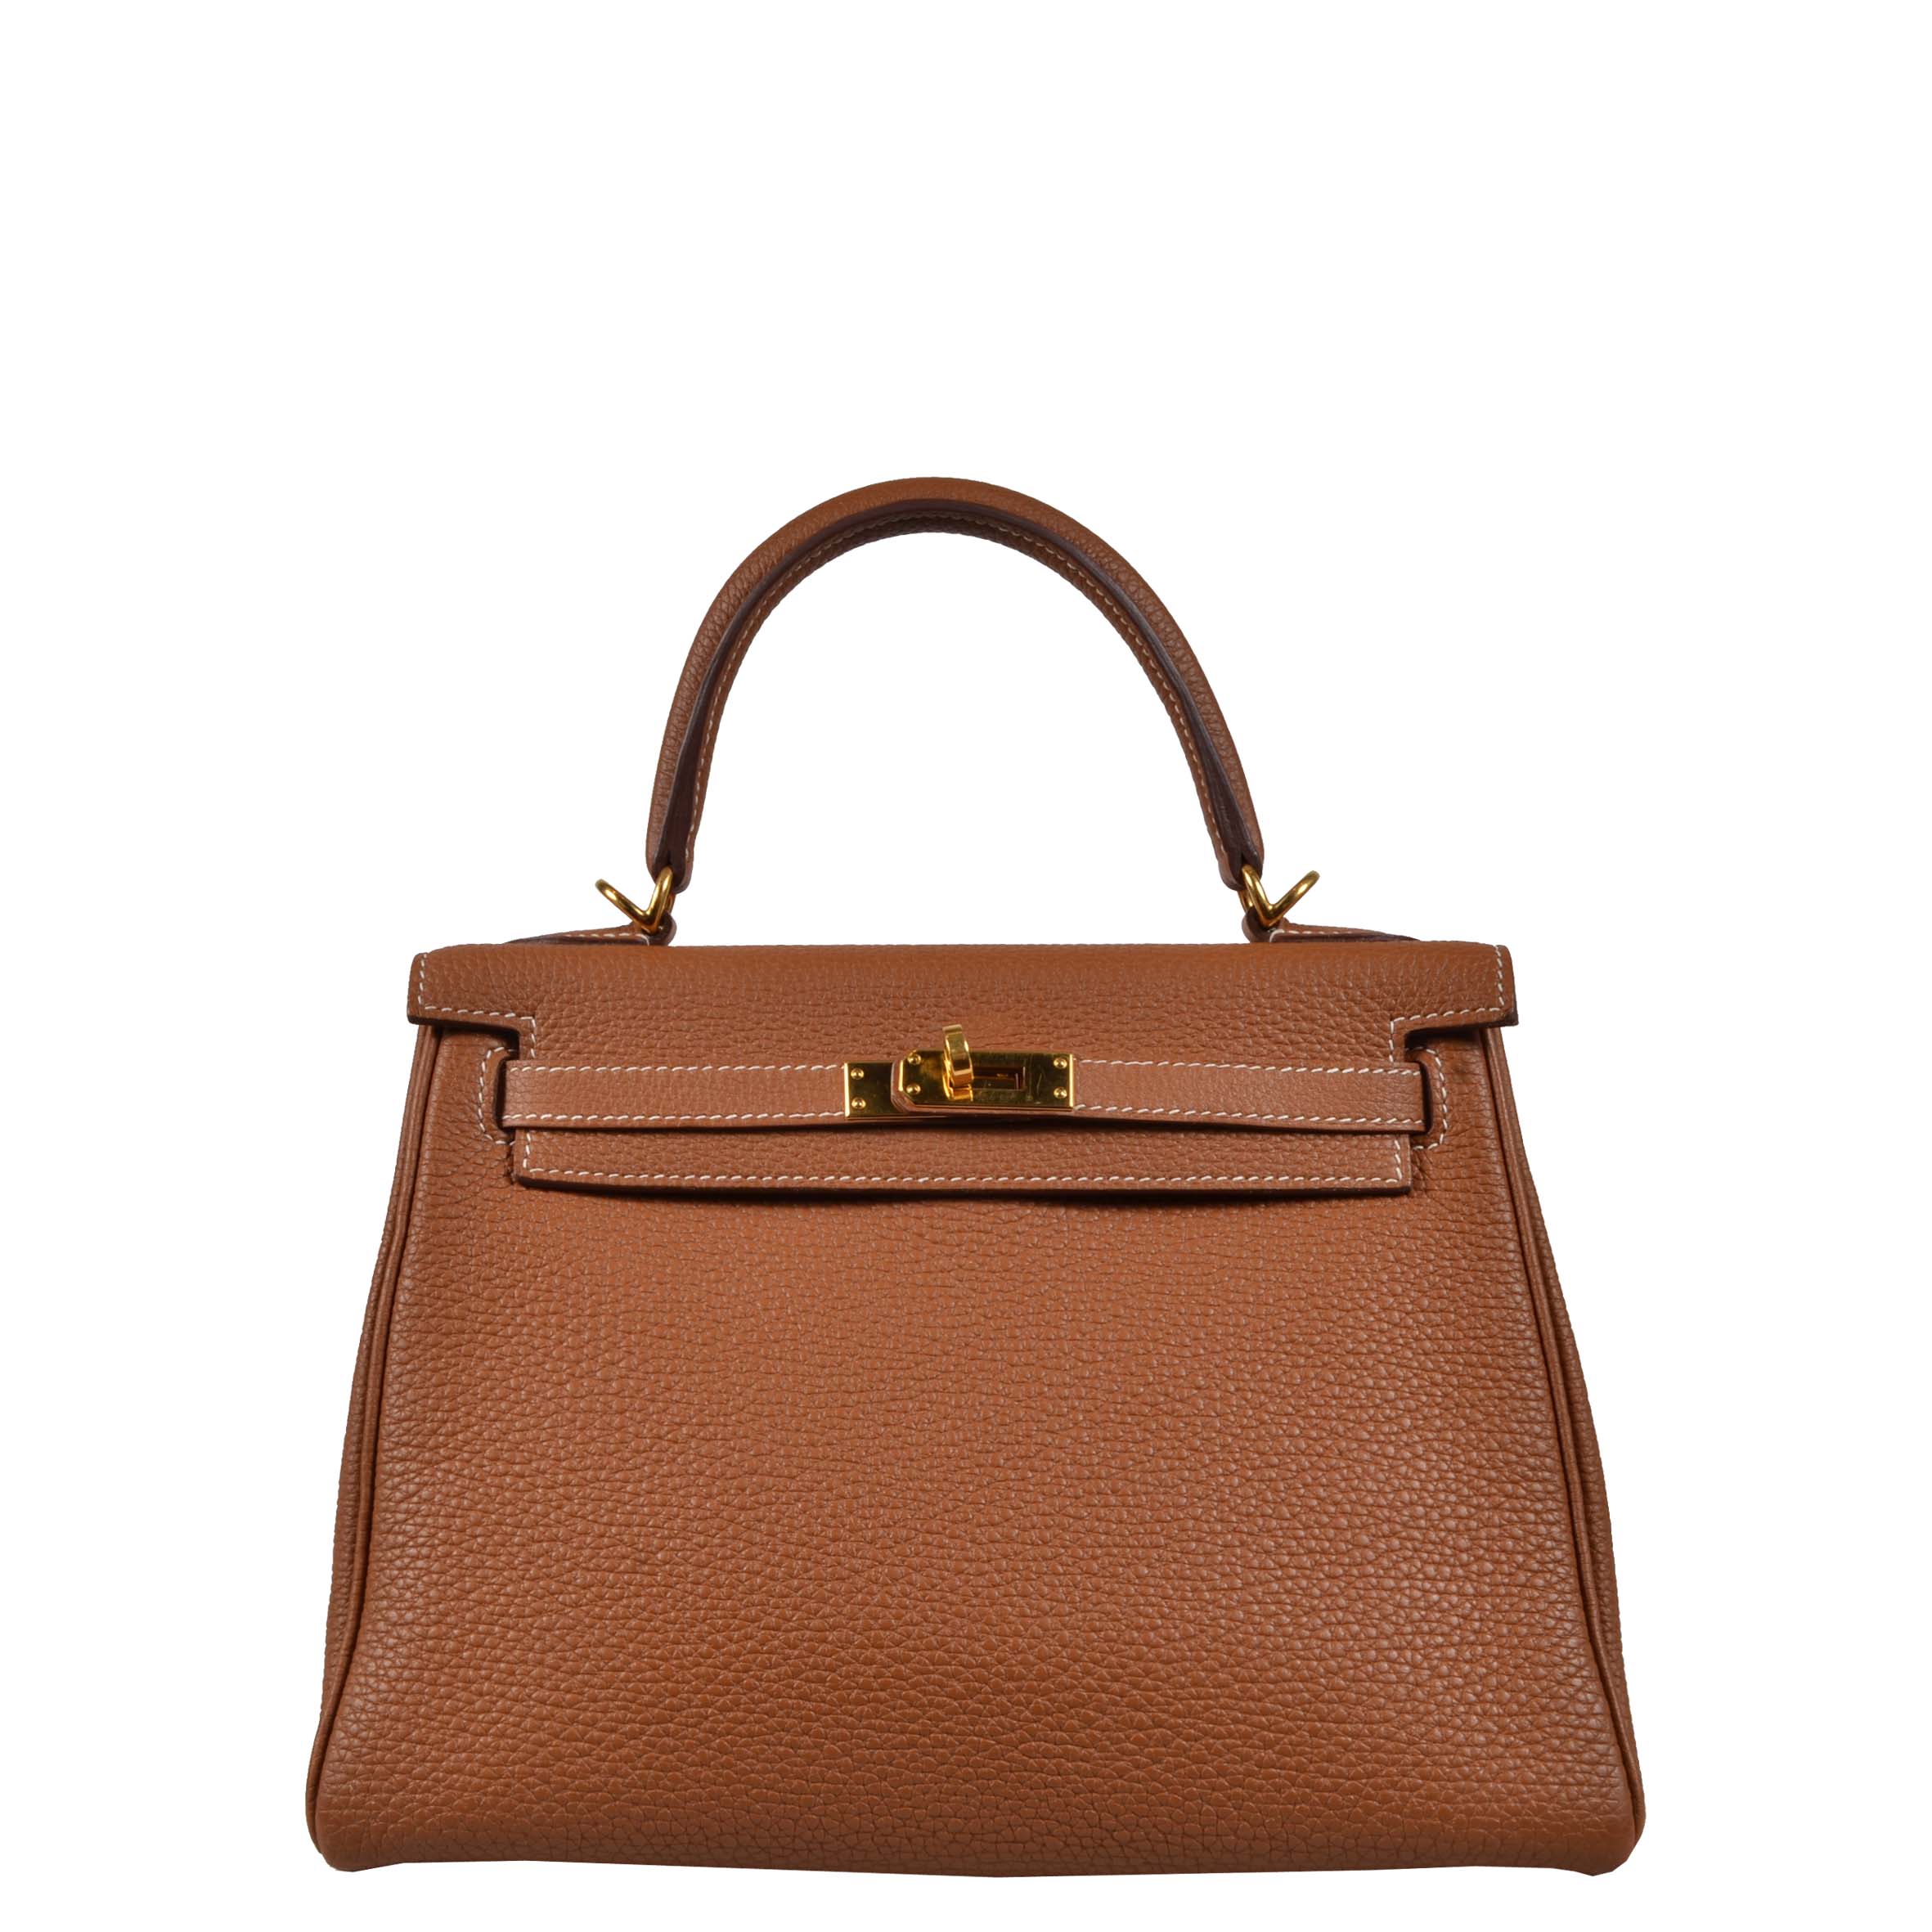 Hermes Tasche Kelly 25 Retourne Togo leather Gold Hardware bag